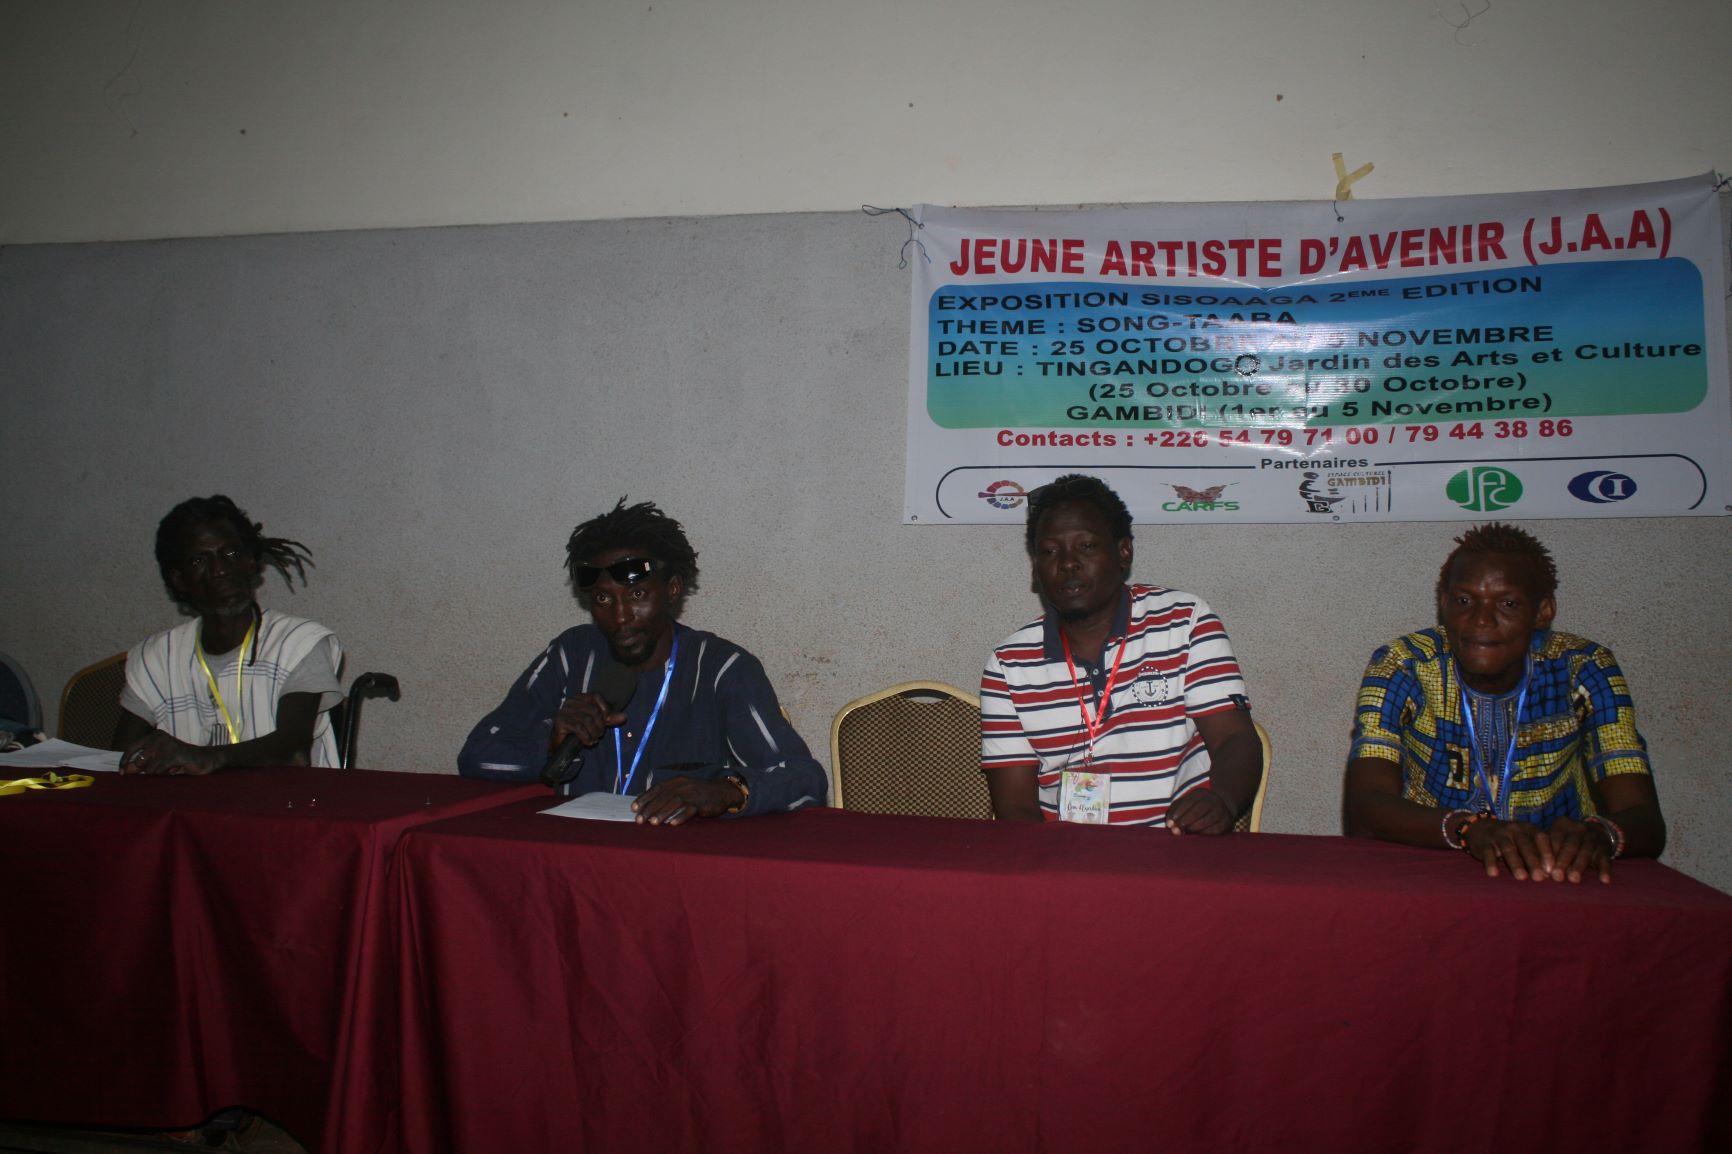  Exposition Sissoaga 2020: L’Association “Jeune Artiste d’Avenir” prête pour la 2e Edition